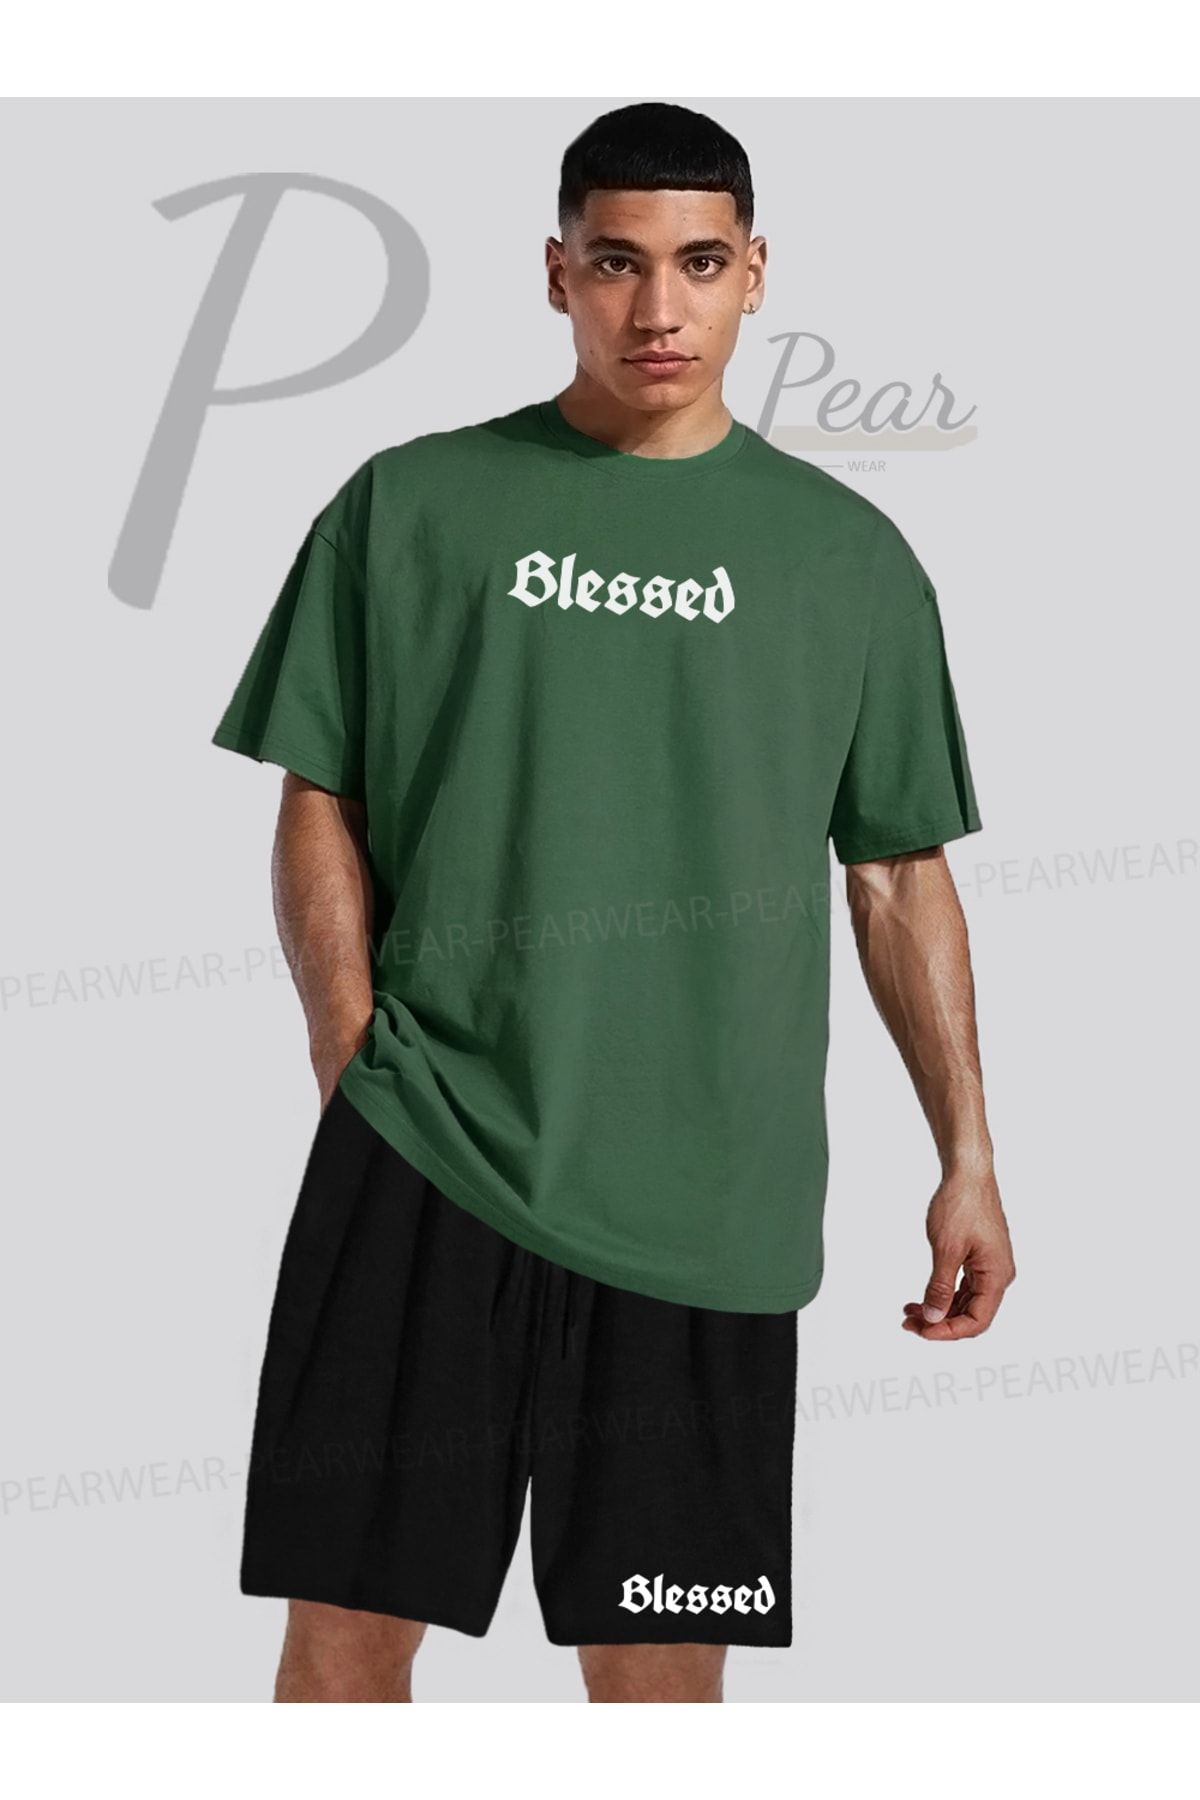 Pear Wear Blessed Baskılı Oversize Tişört Regular Fit Şort T-Shirt İkili Takım